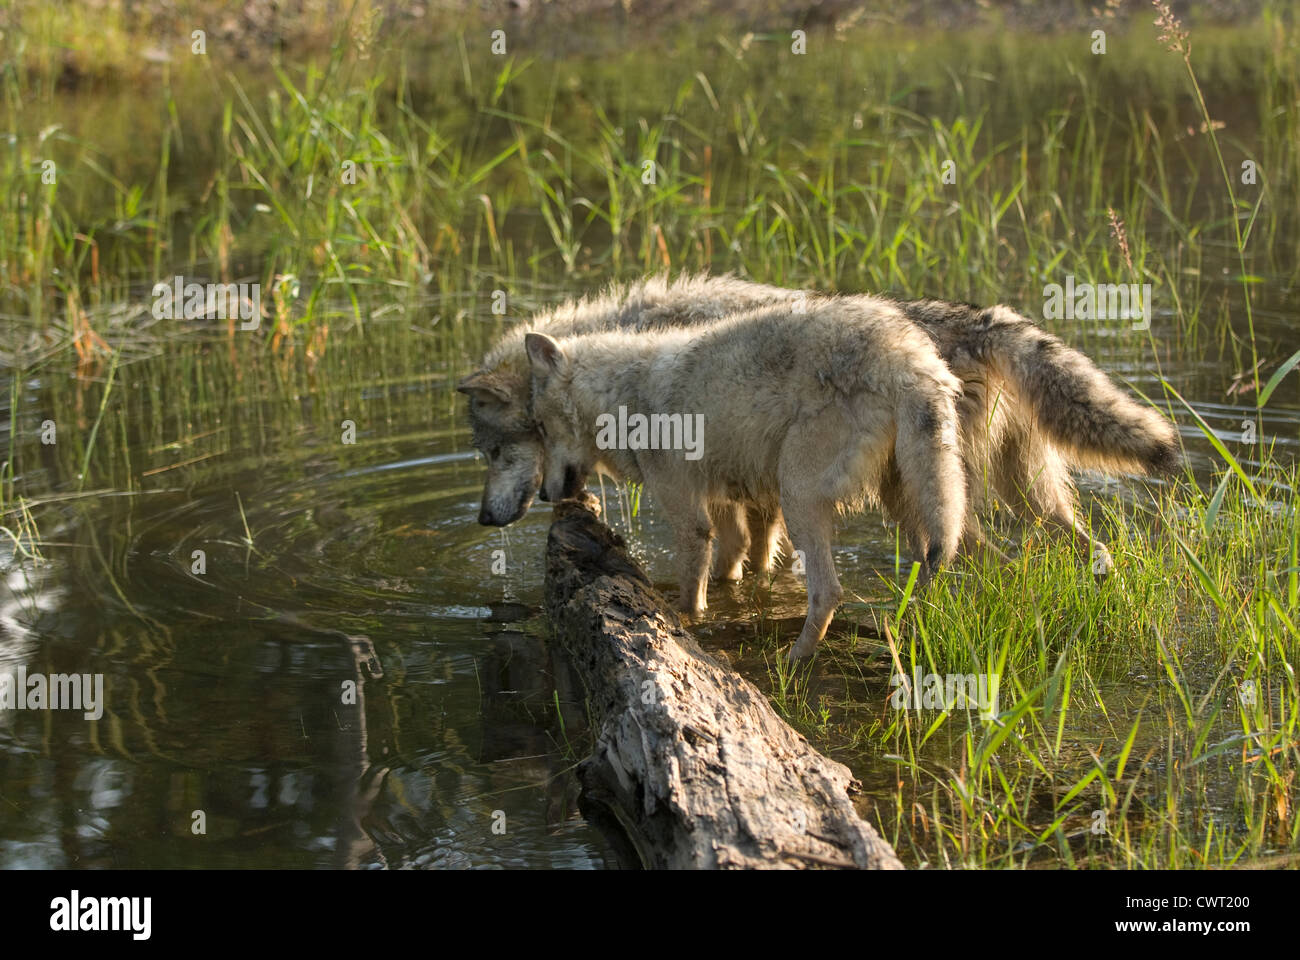 Dos lobos jugando en el agua de un estanque poco profundo Foto de stock